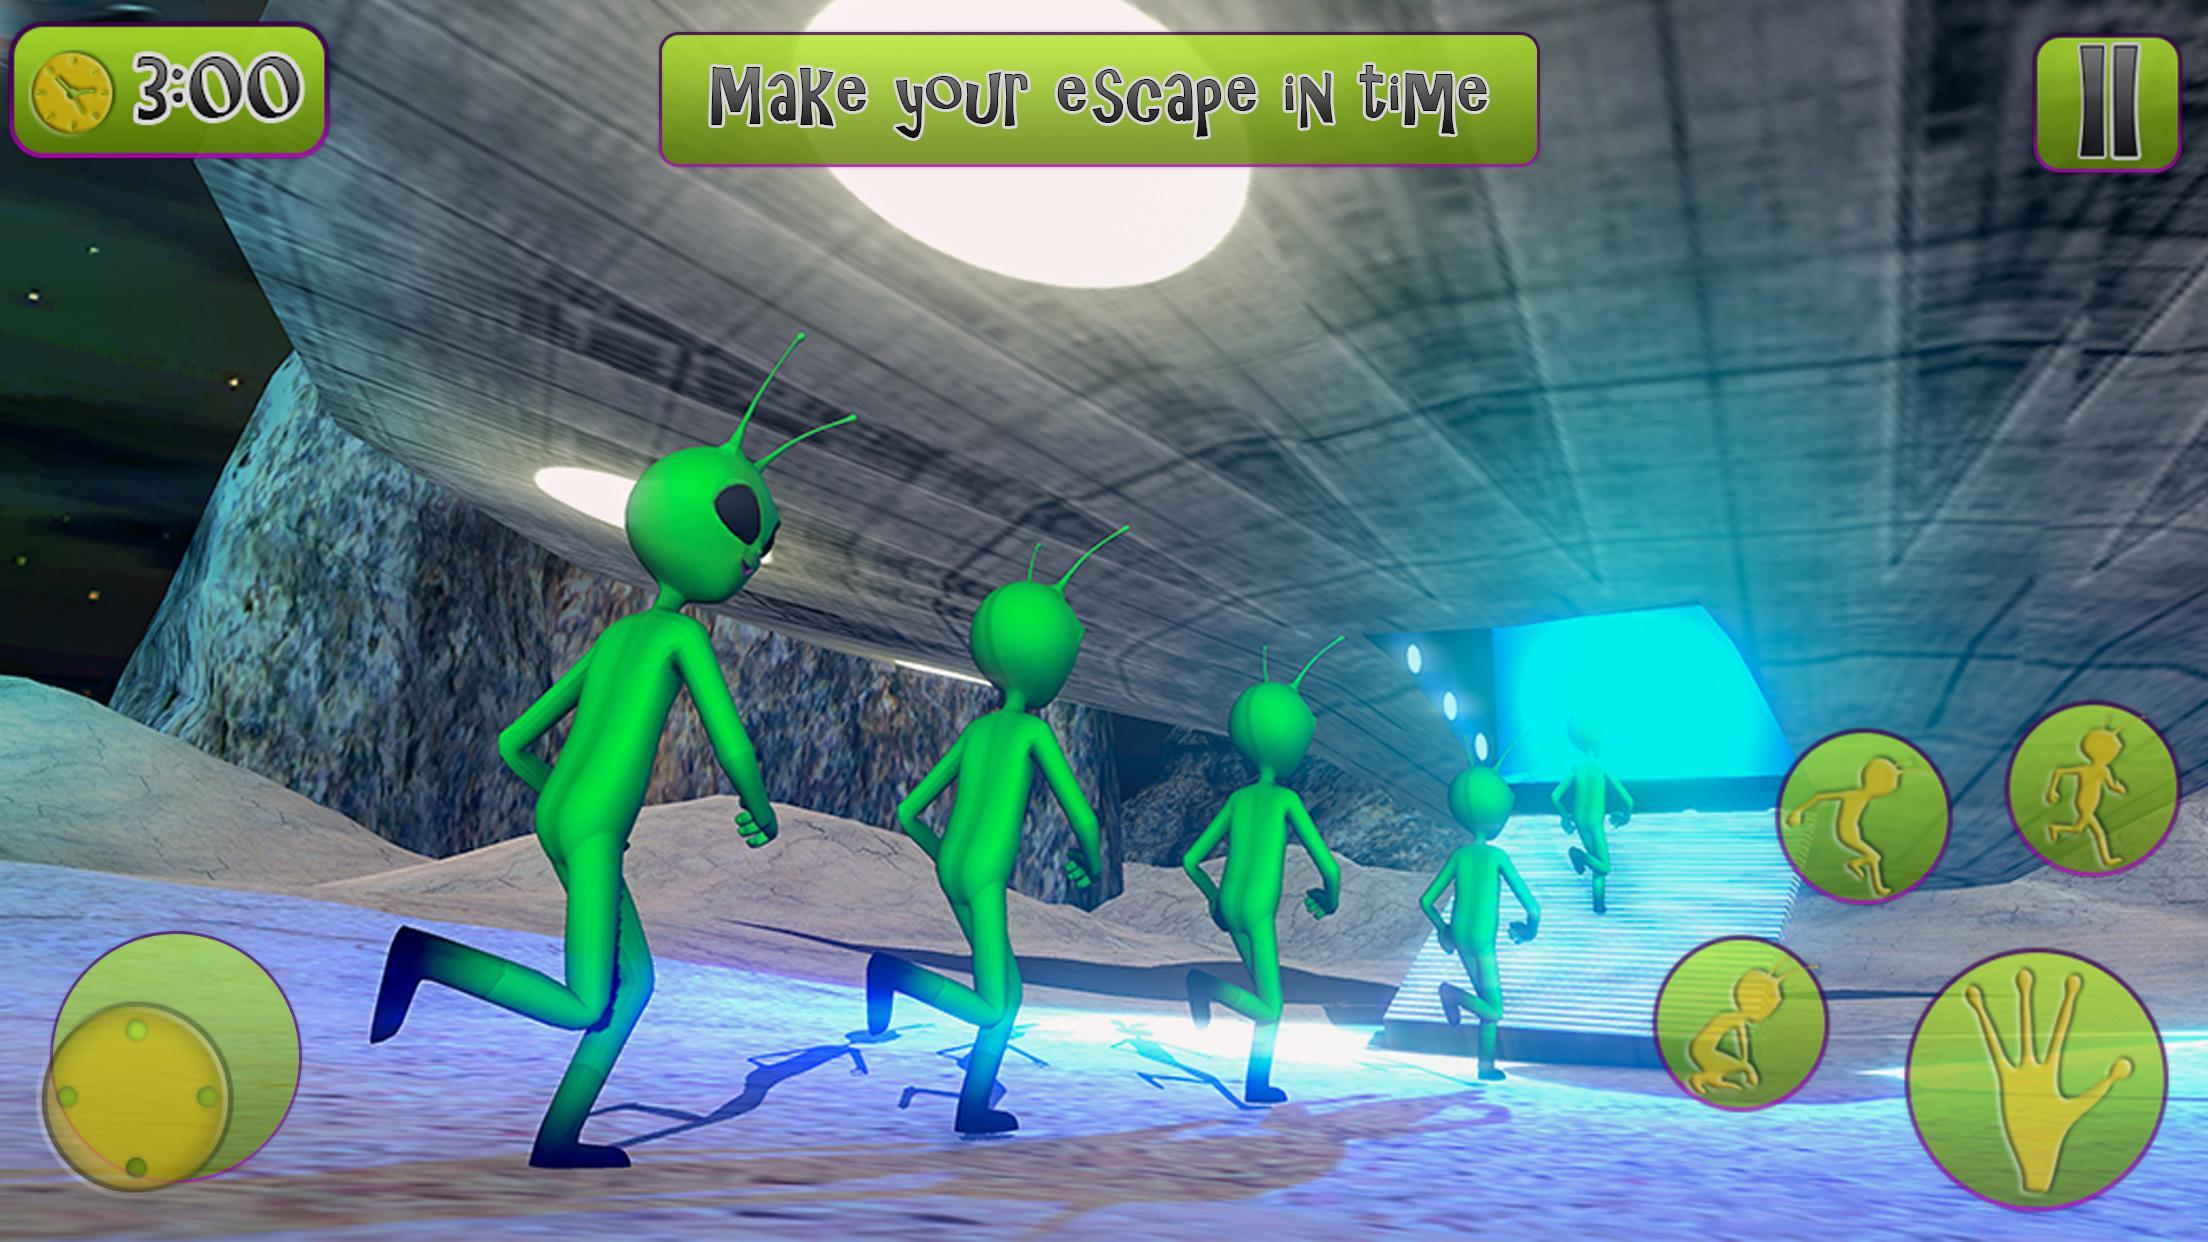 Green Alien Prison Escape Game 2020 For Android Apk Download - planeta alien roblox